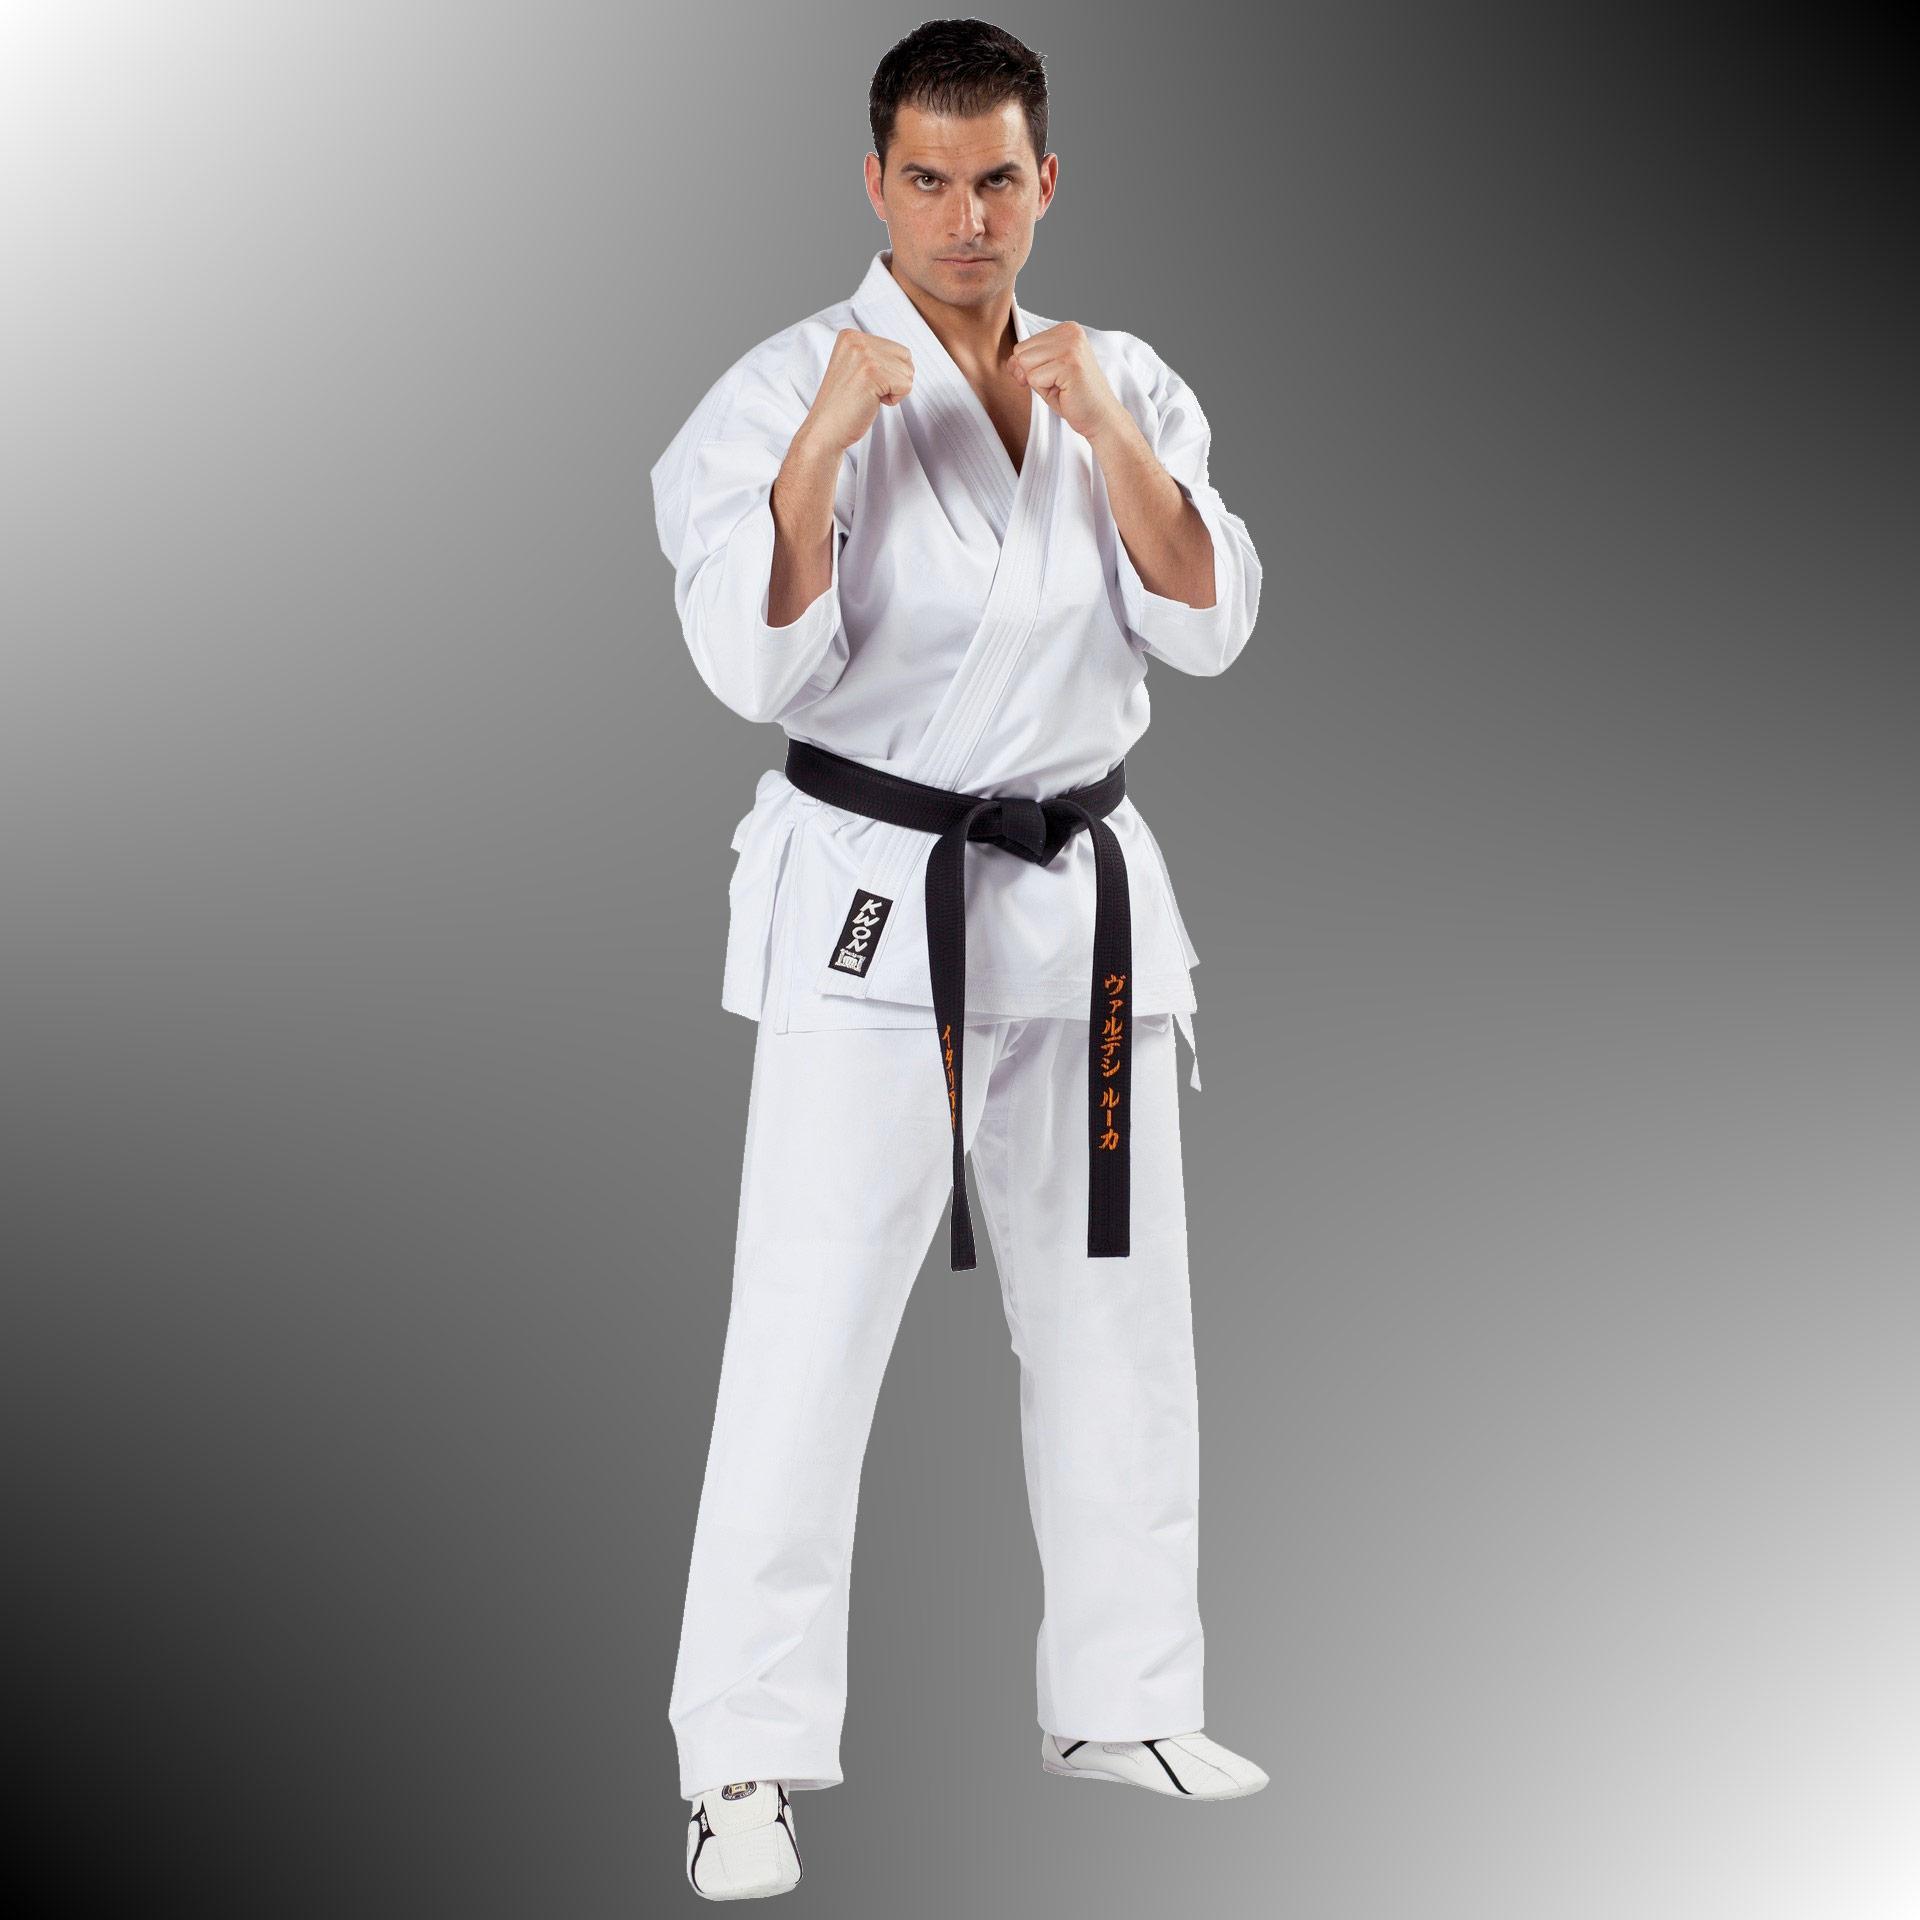 SV und Karate Anzug SPECIALIST von KWON®, 12 Oz., weiß